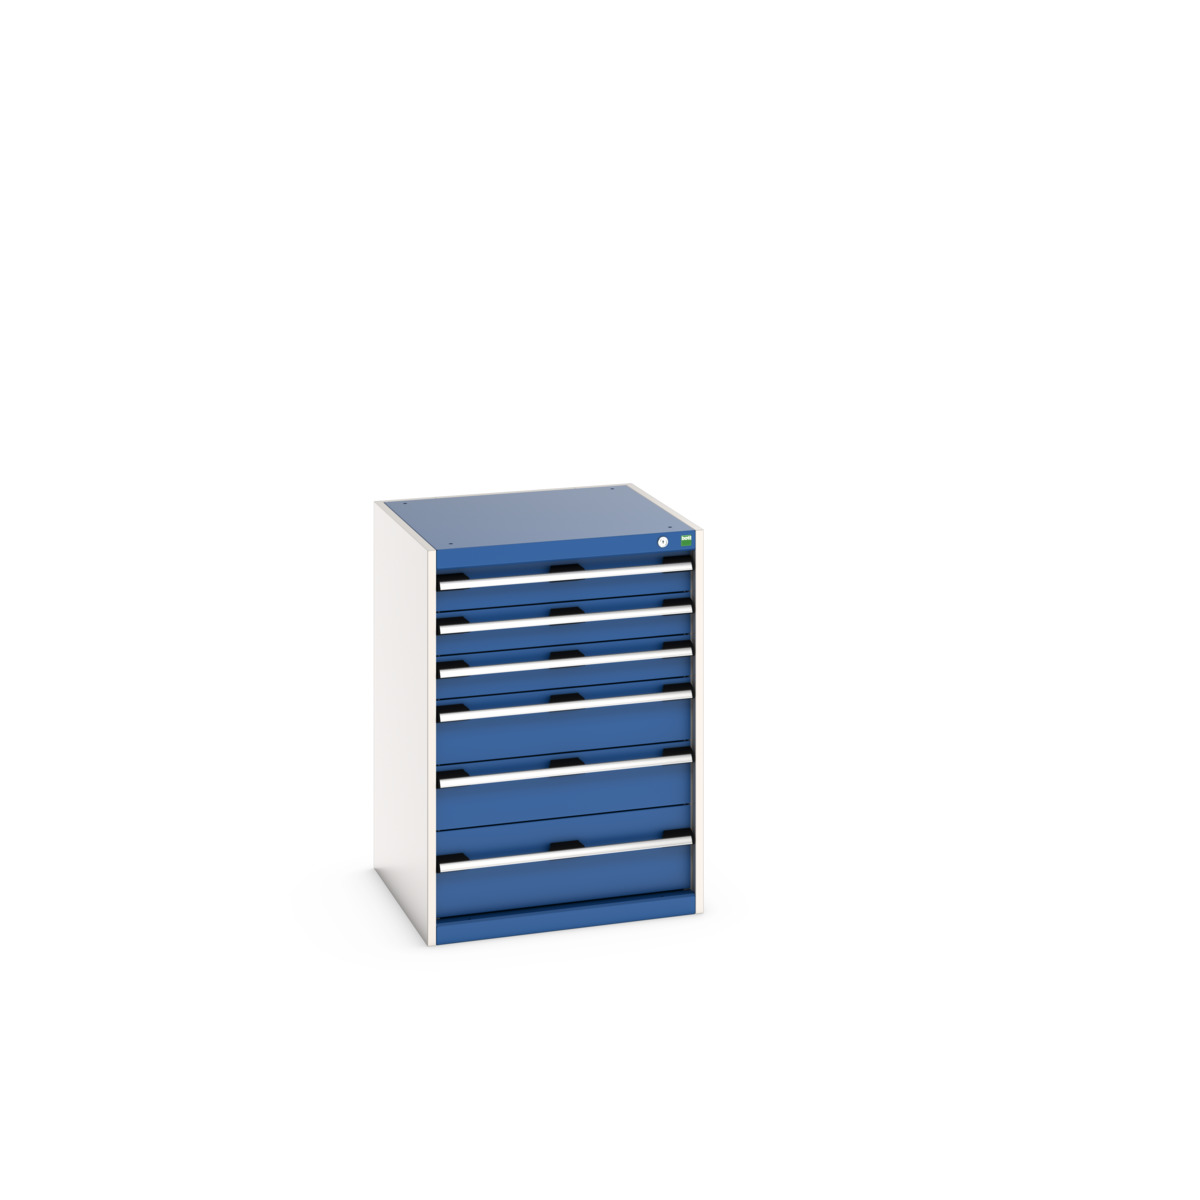 40019049.11V - cubio drawer cabinet